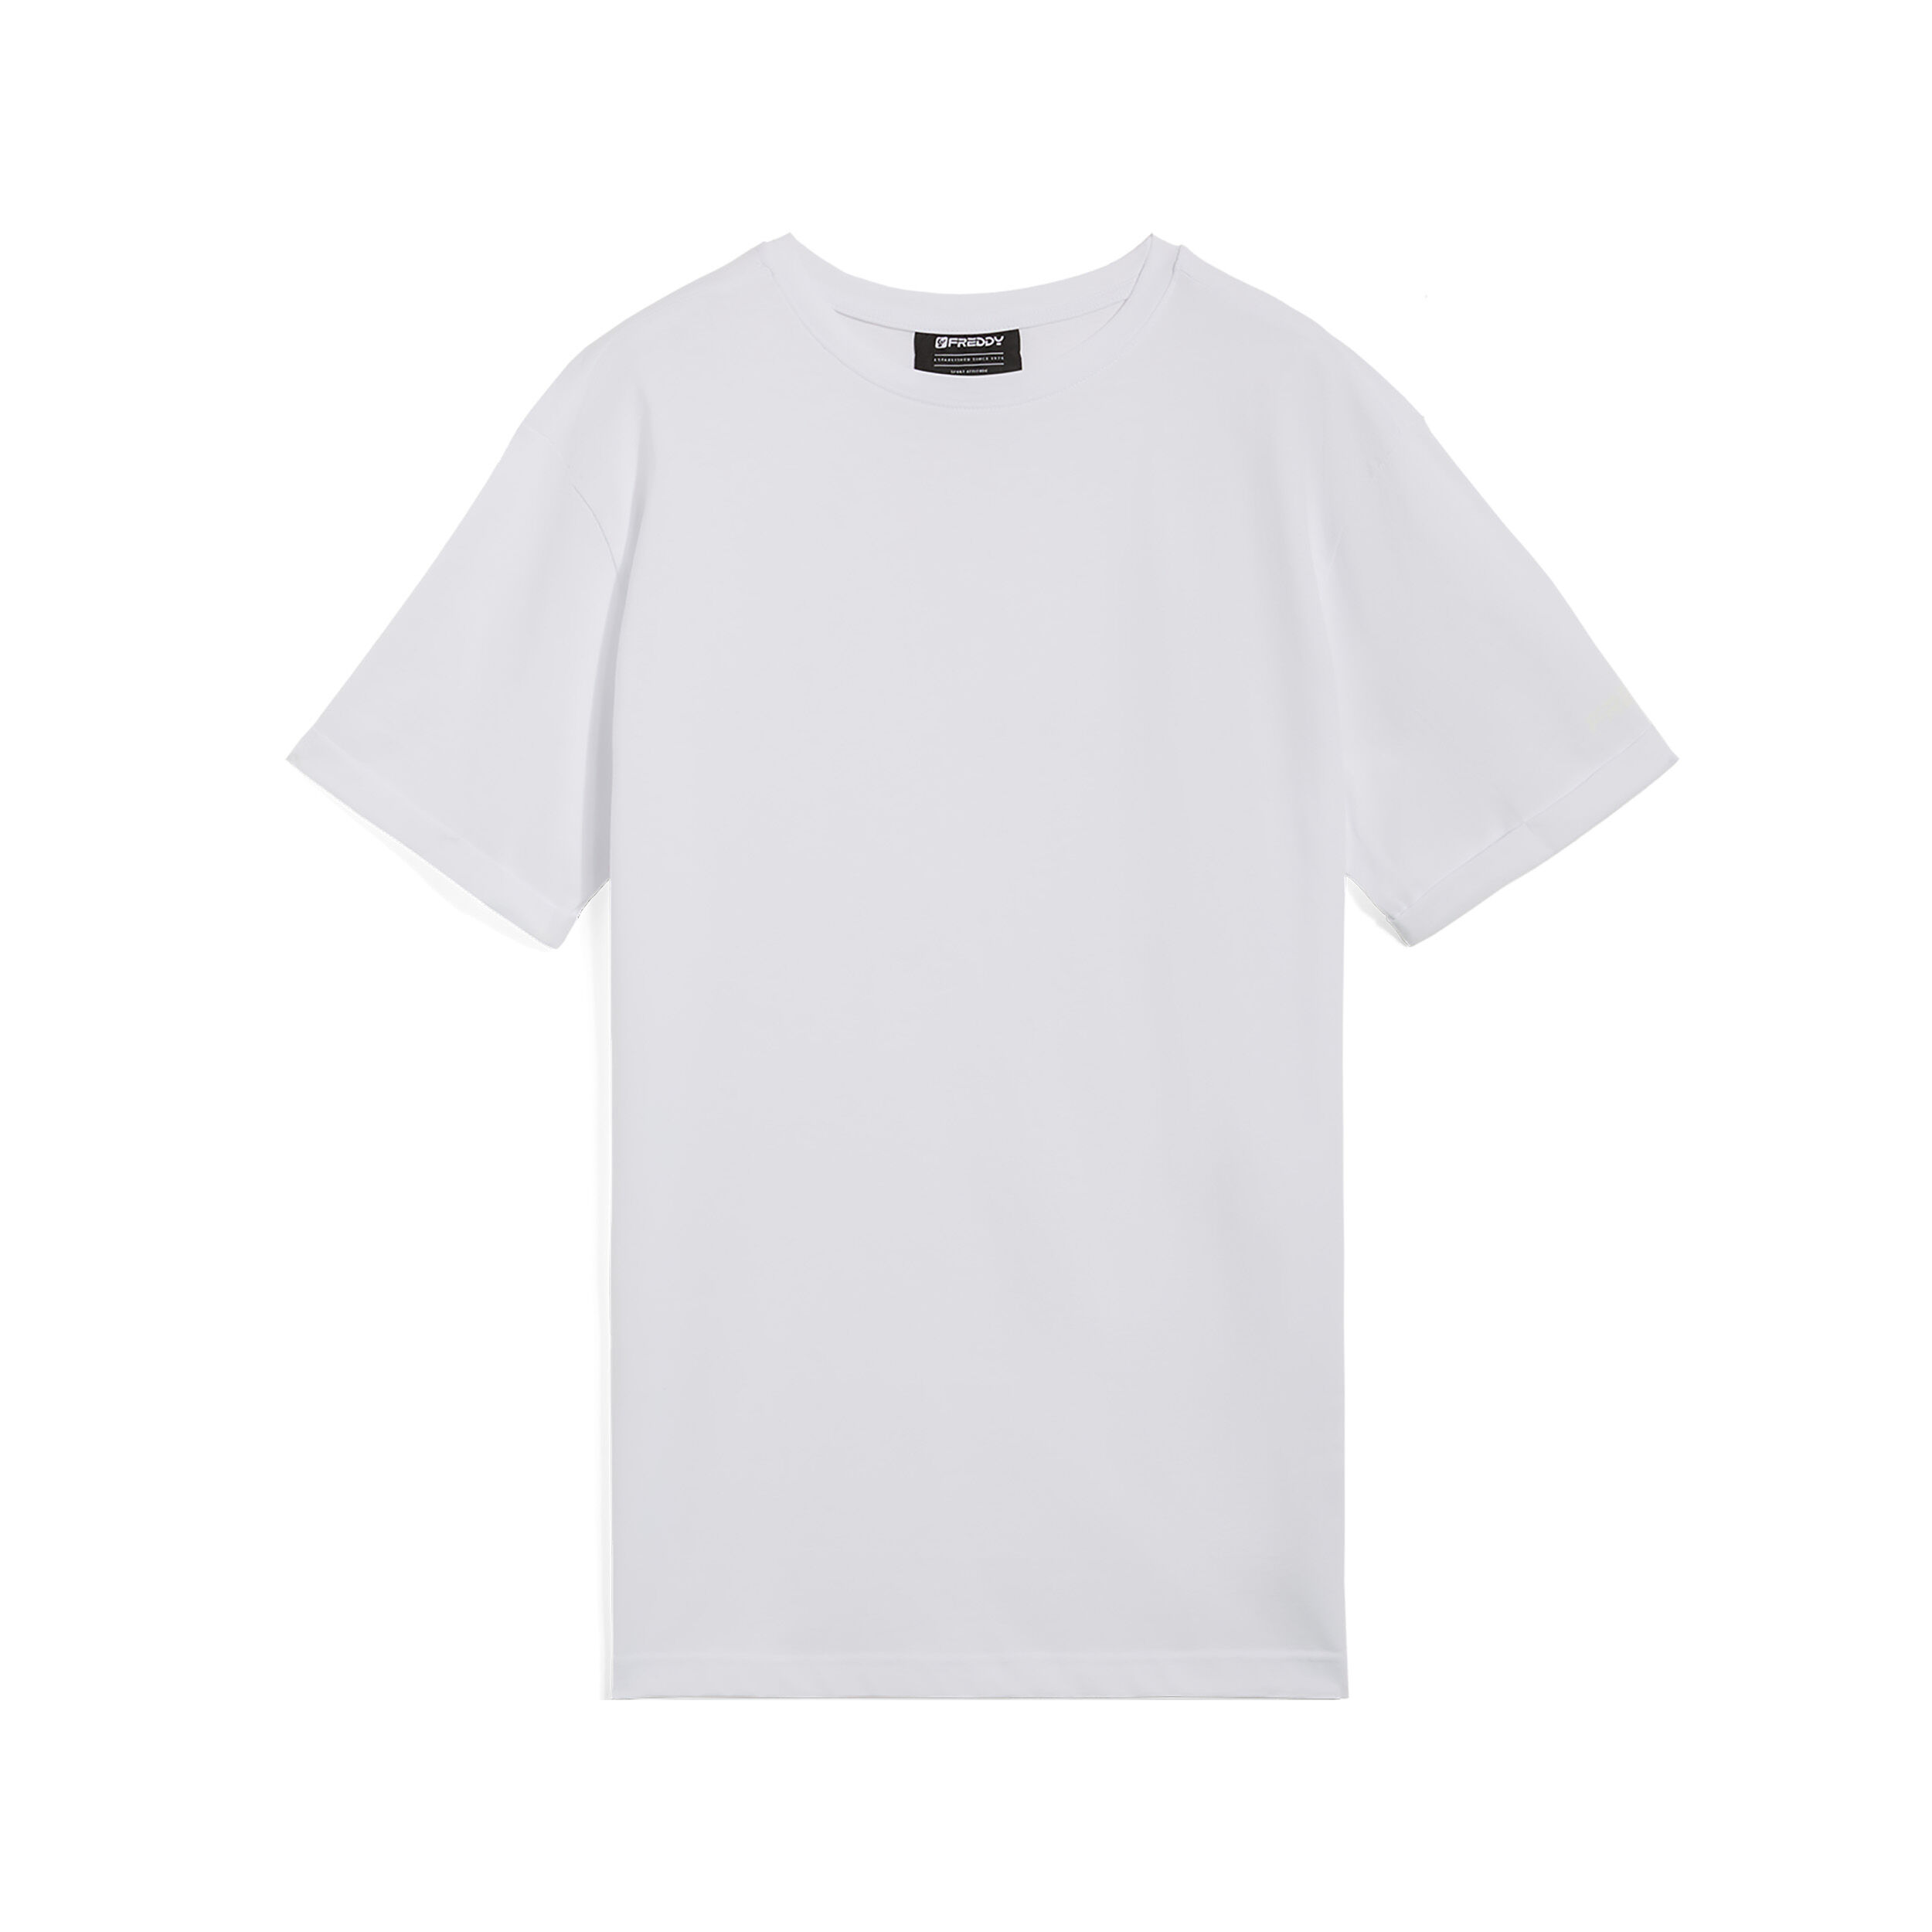 Freddy T-shirt da uomo design essenziale in cotone 100% Bianco Uomo Small